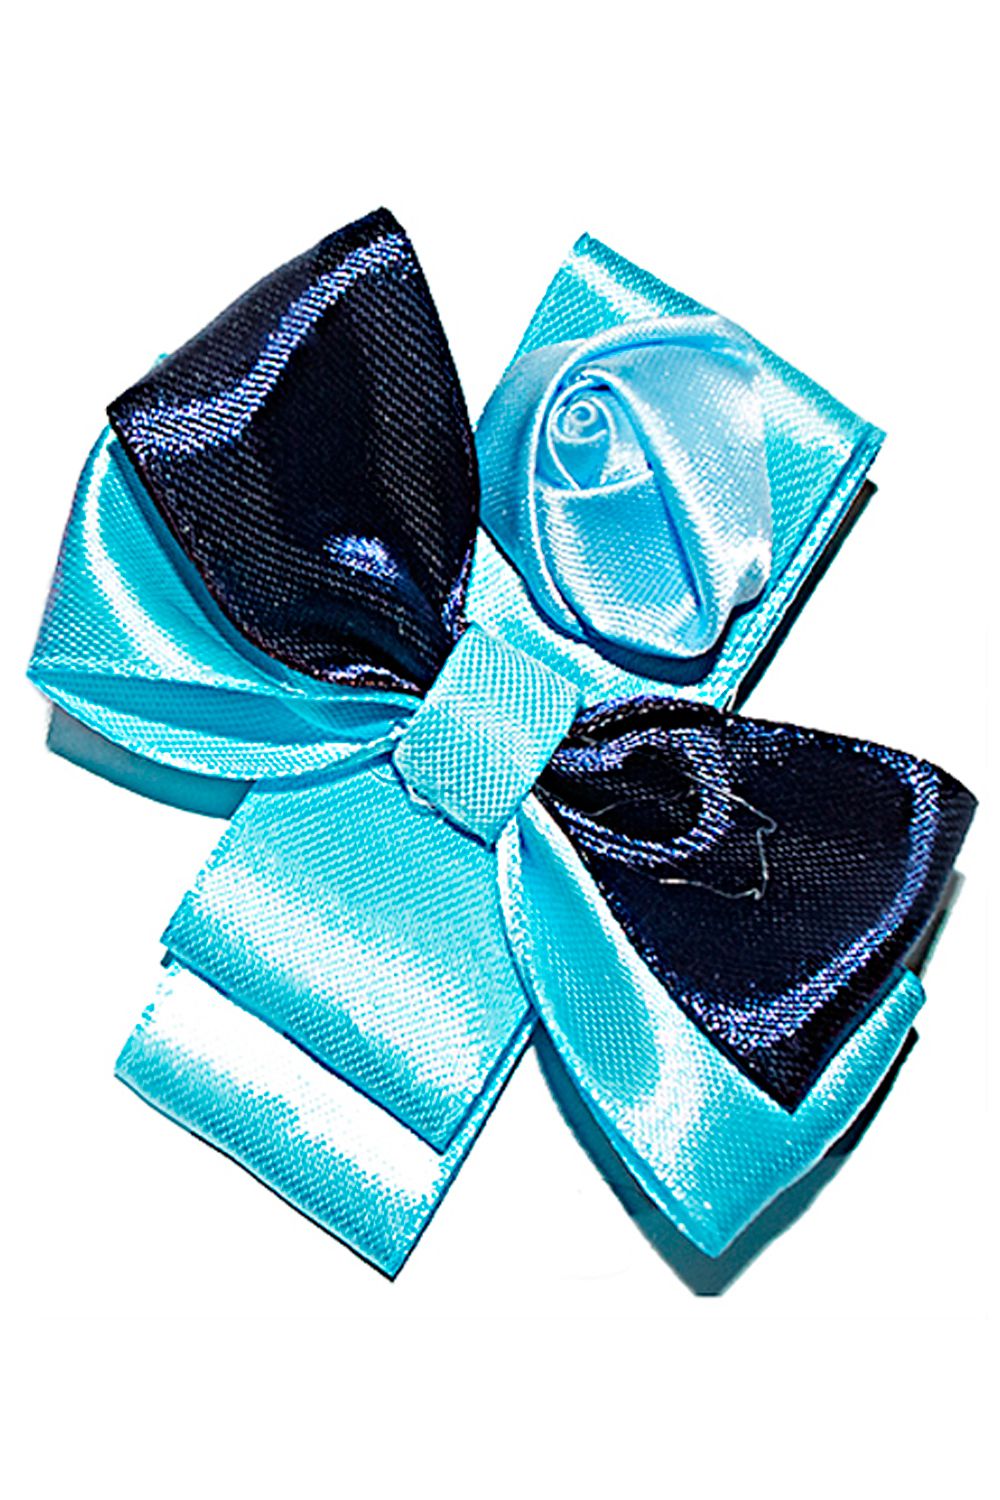 Брошь для девочки 20-22 голубой Arco Carino, Российская Федерация